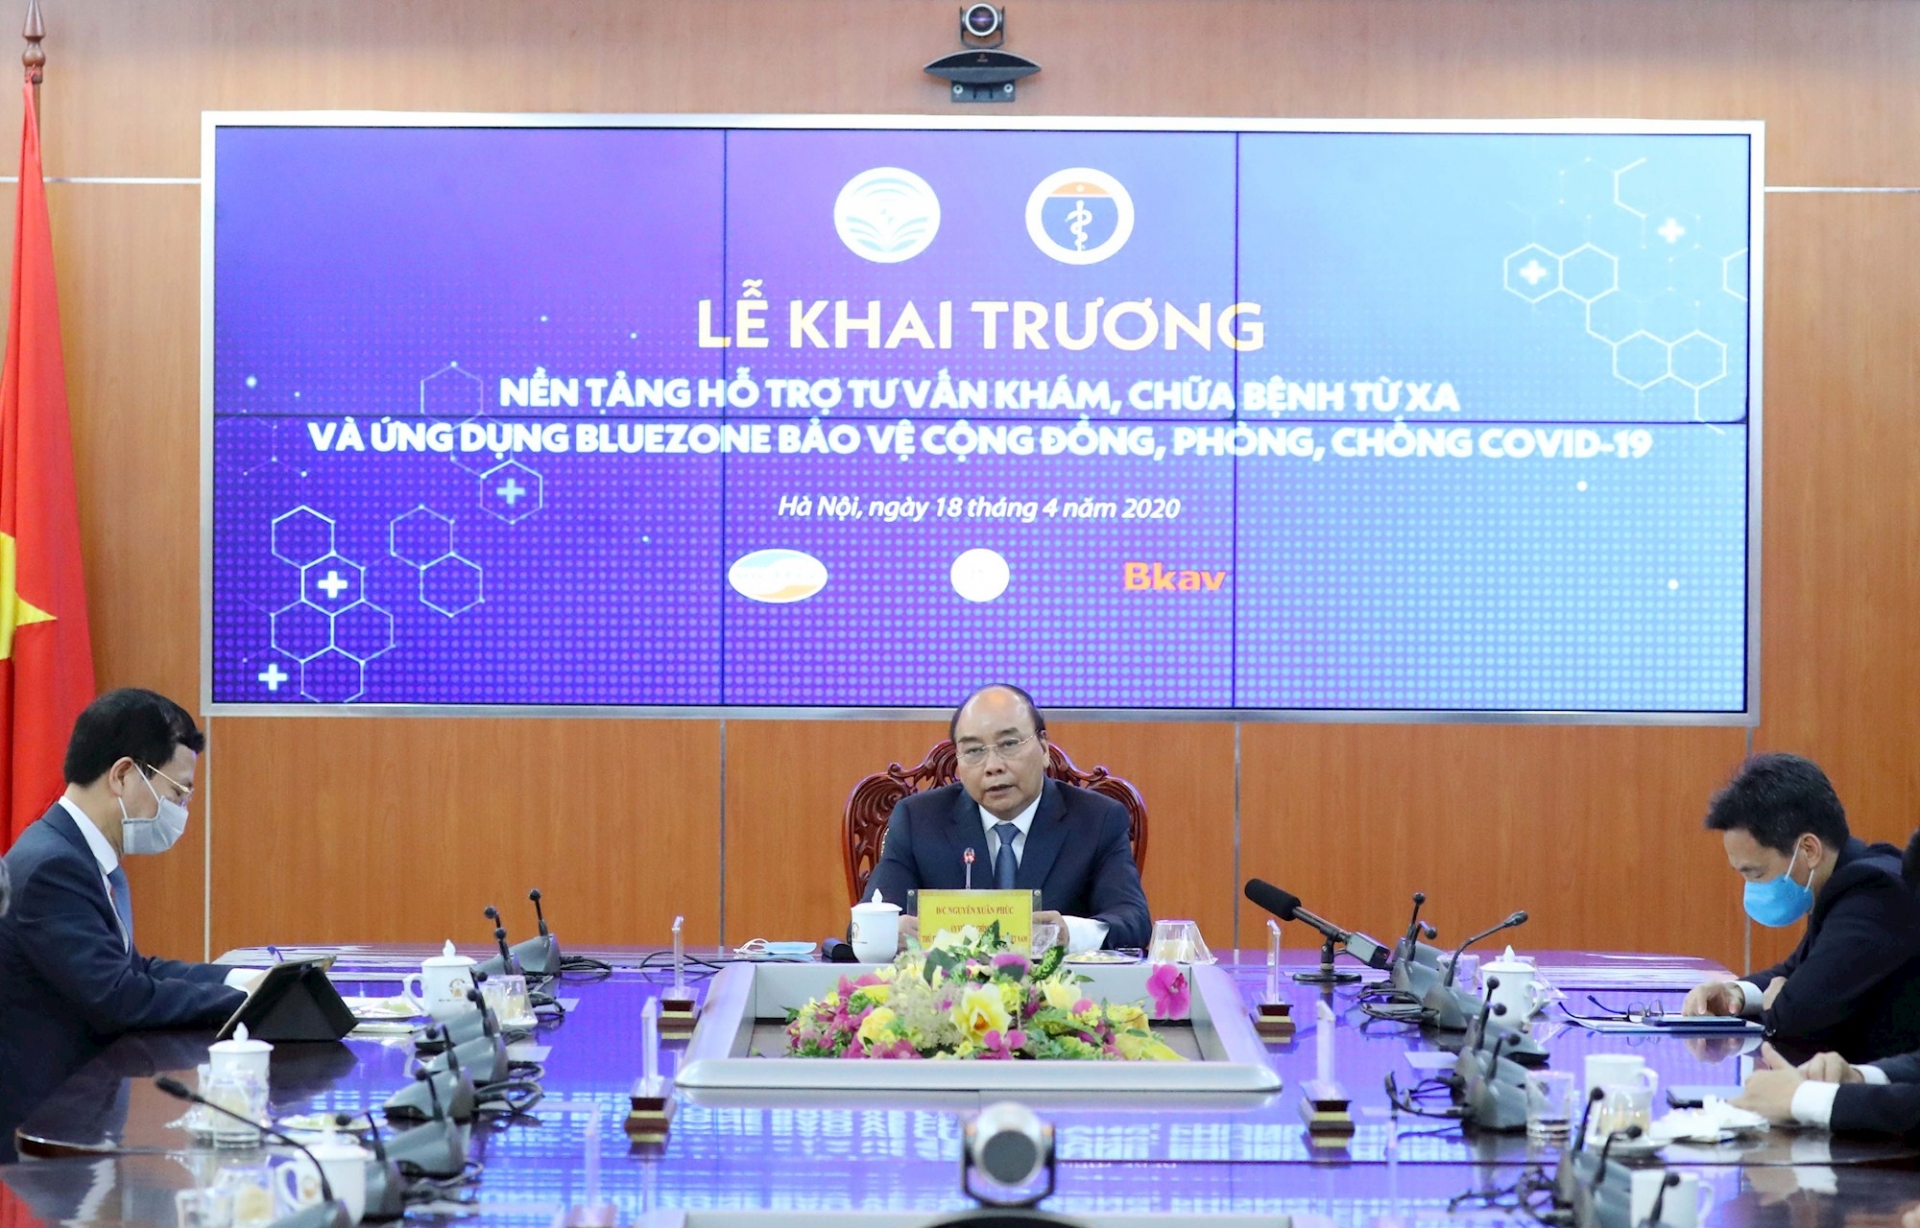 Thủ tướng Nguyễn Xuân Phúc và các đại biểu theo dõi việc thực hiện tư vấn khám, chữa bệnh từ xa tại Bệnh viện Đại học Y Hà Nội và 3 bệnh viện vệ tinh dưới sự hỗ trợ của nền tảng công nghệ. Ảnh: Thống Nhất – TTXVN